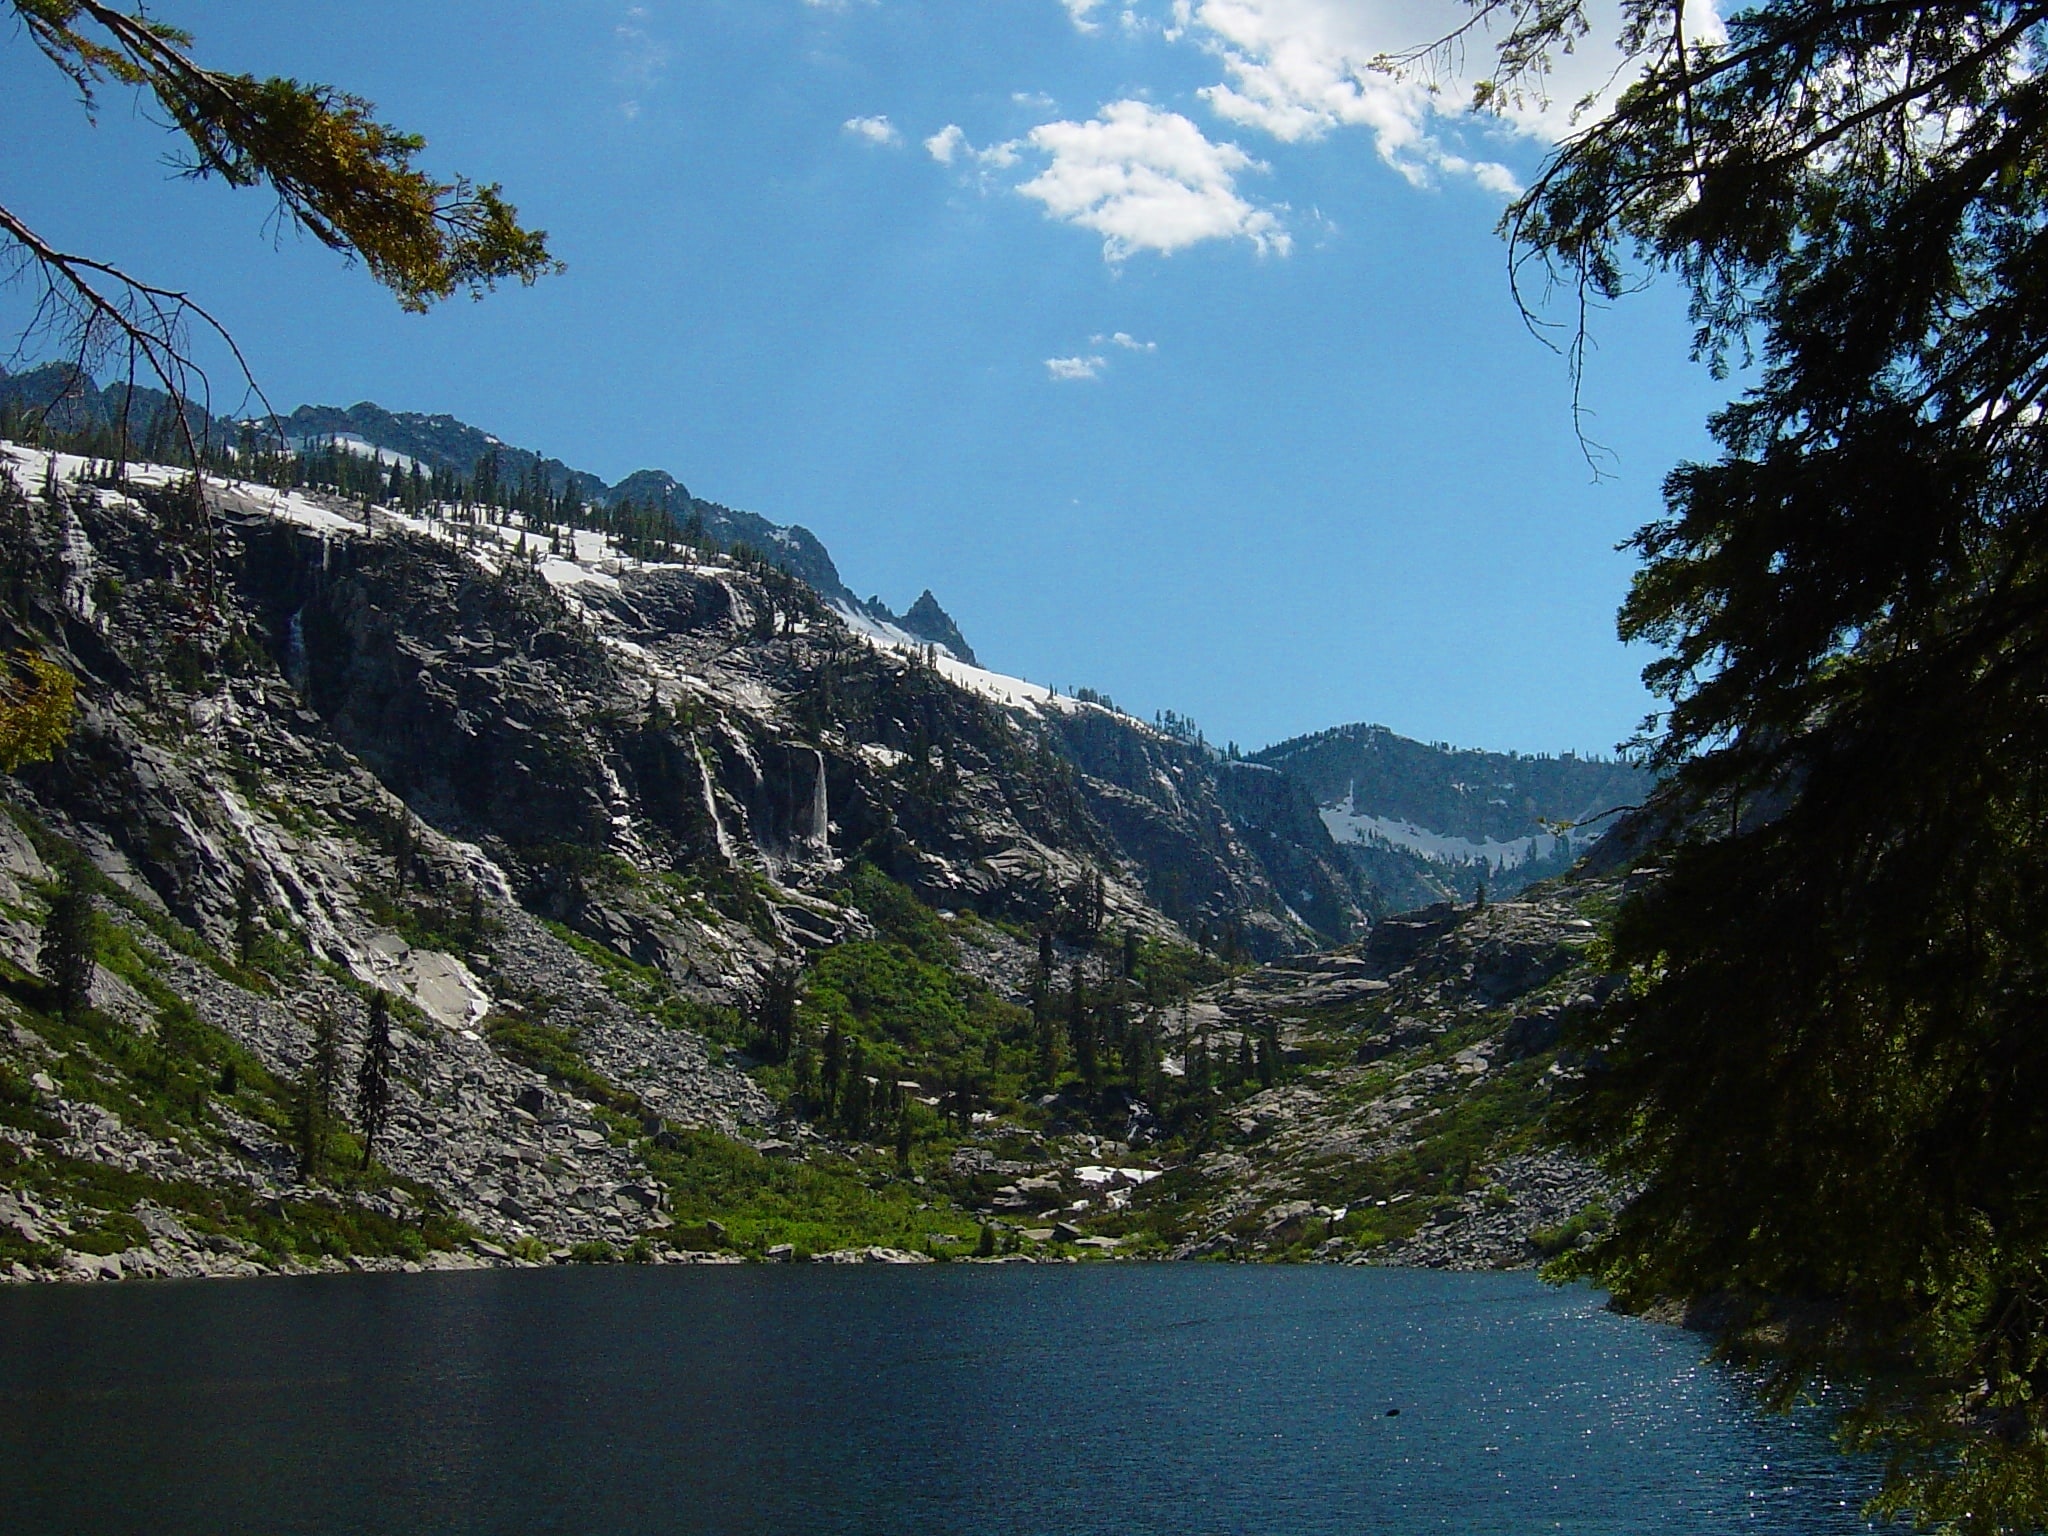 Trinity Alps Wilderness, Stany Zjednoczone